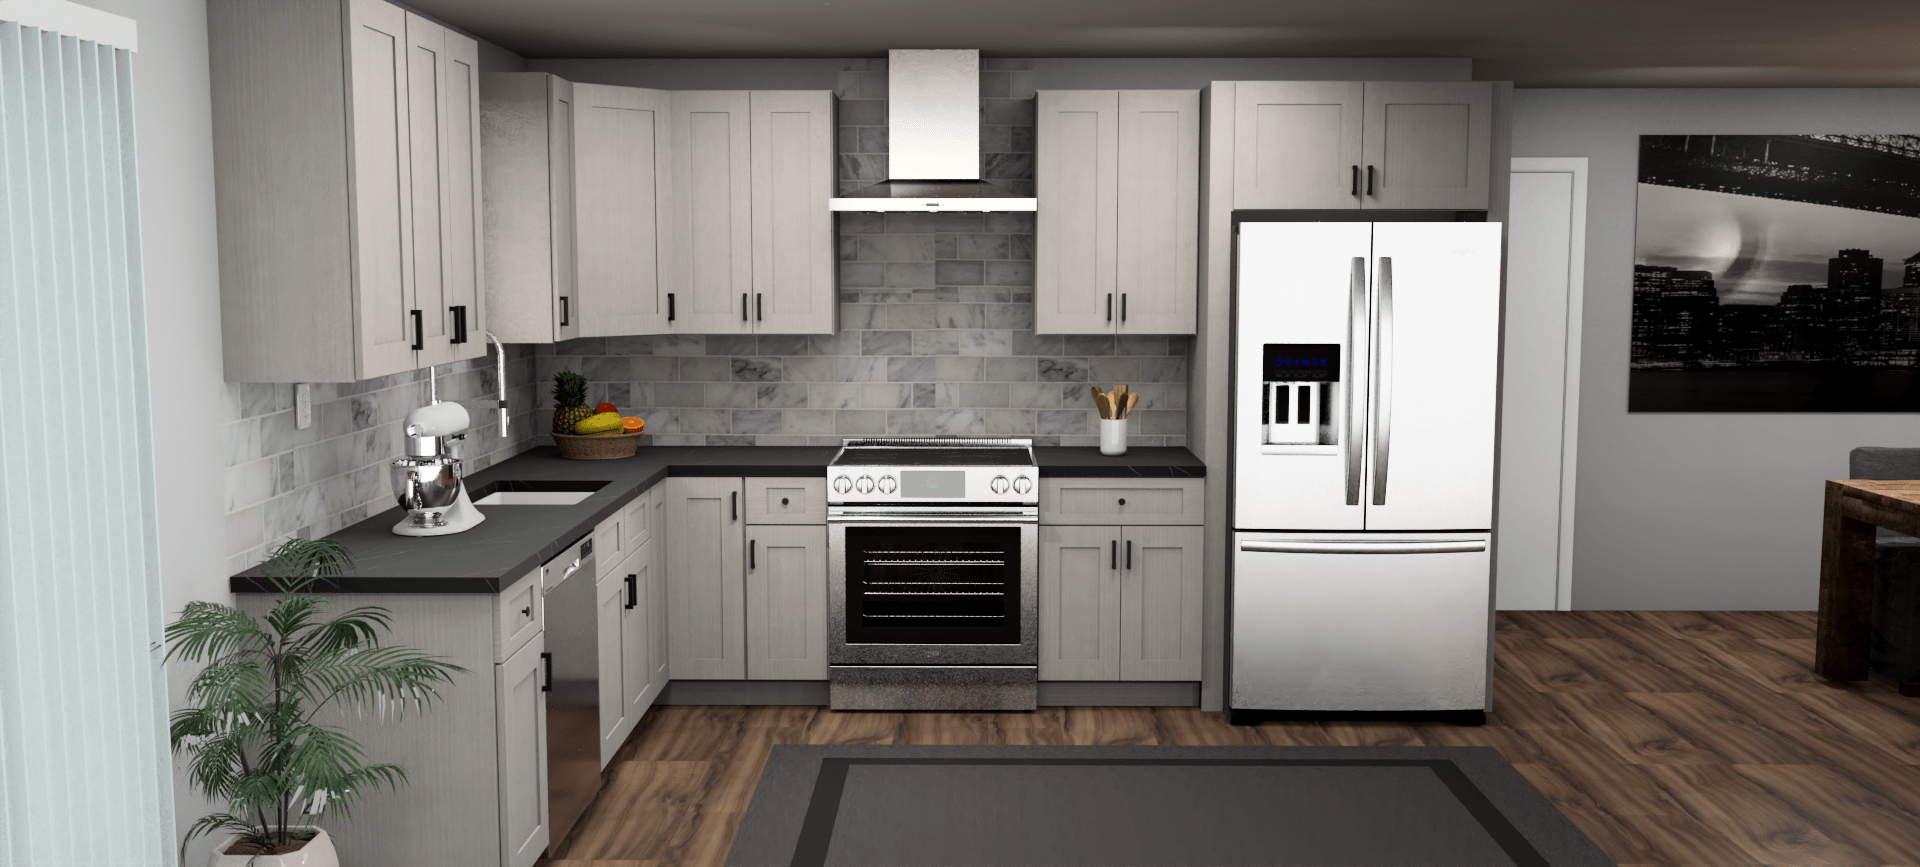 Fabuwood Allure Galaxy Horizon 9 x 12 L Shaped Kitchen Front Layout Photo